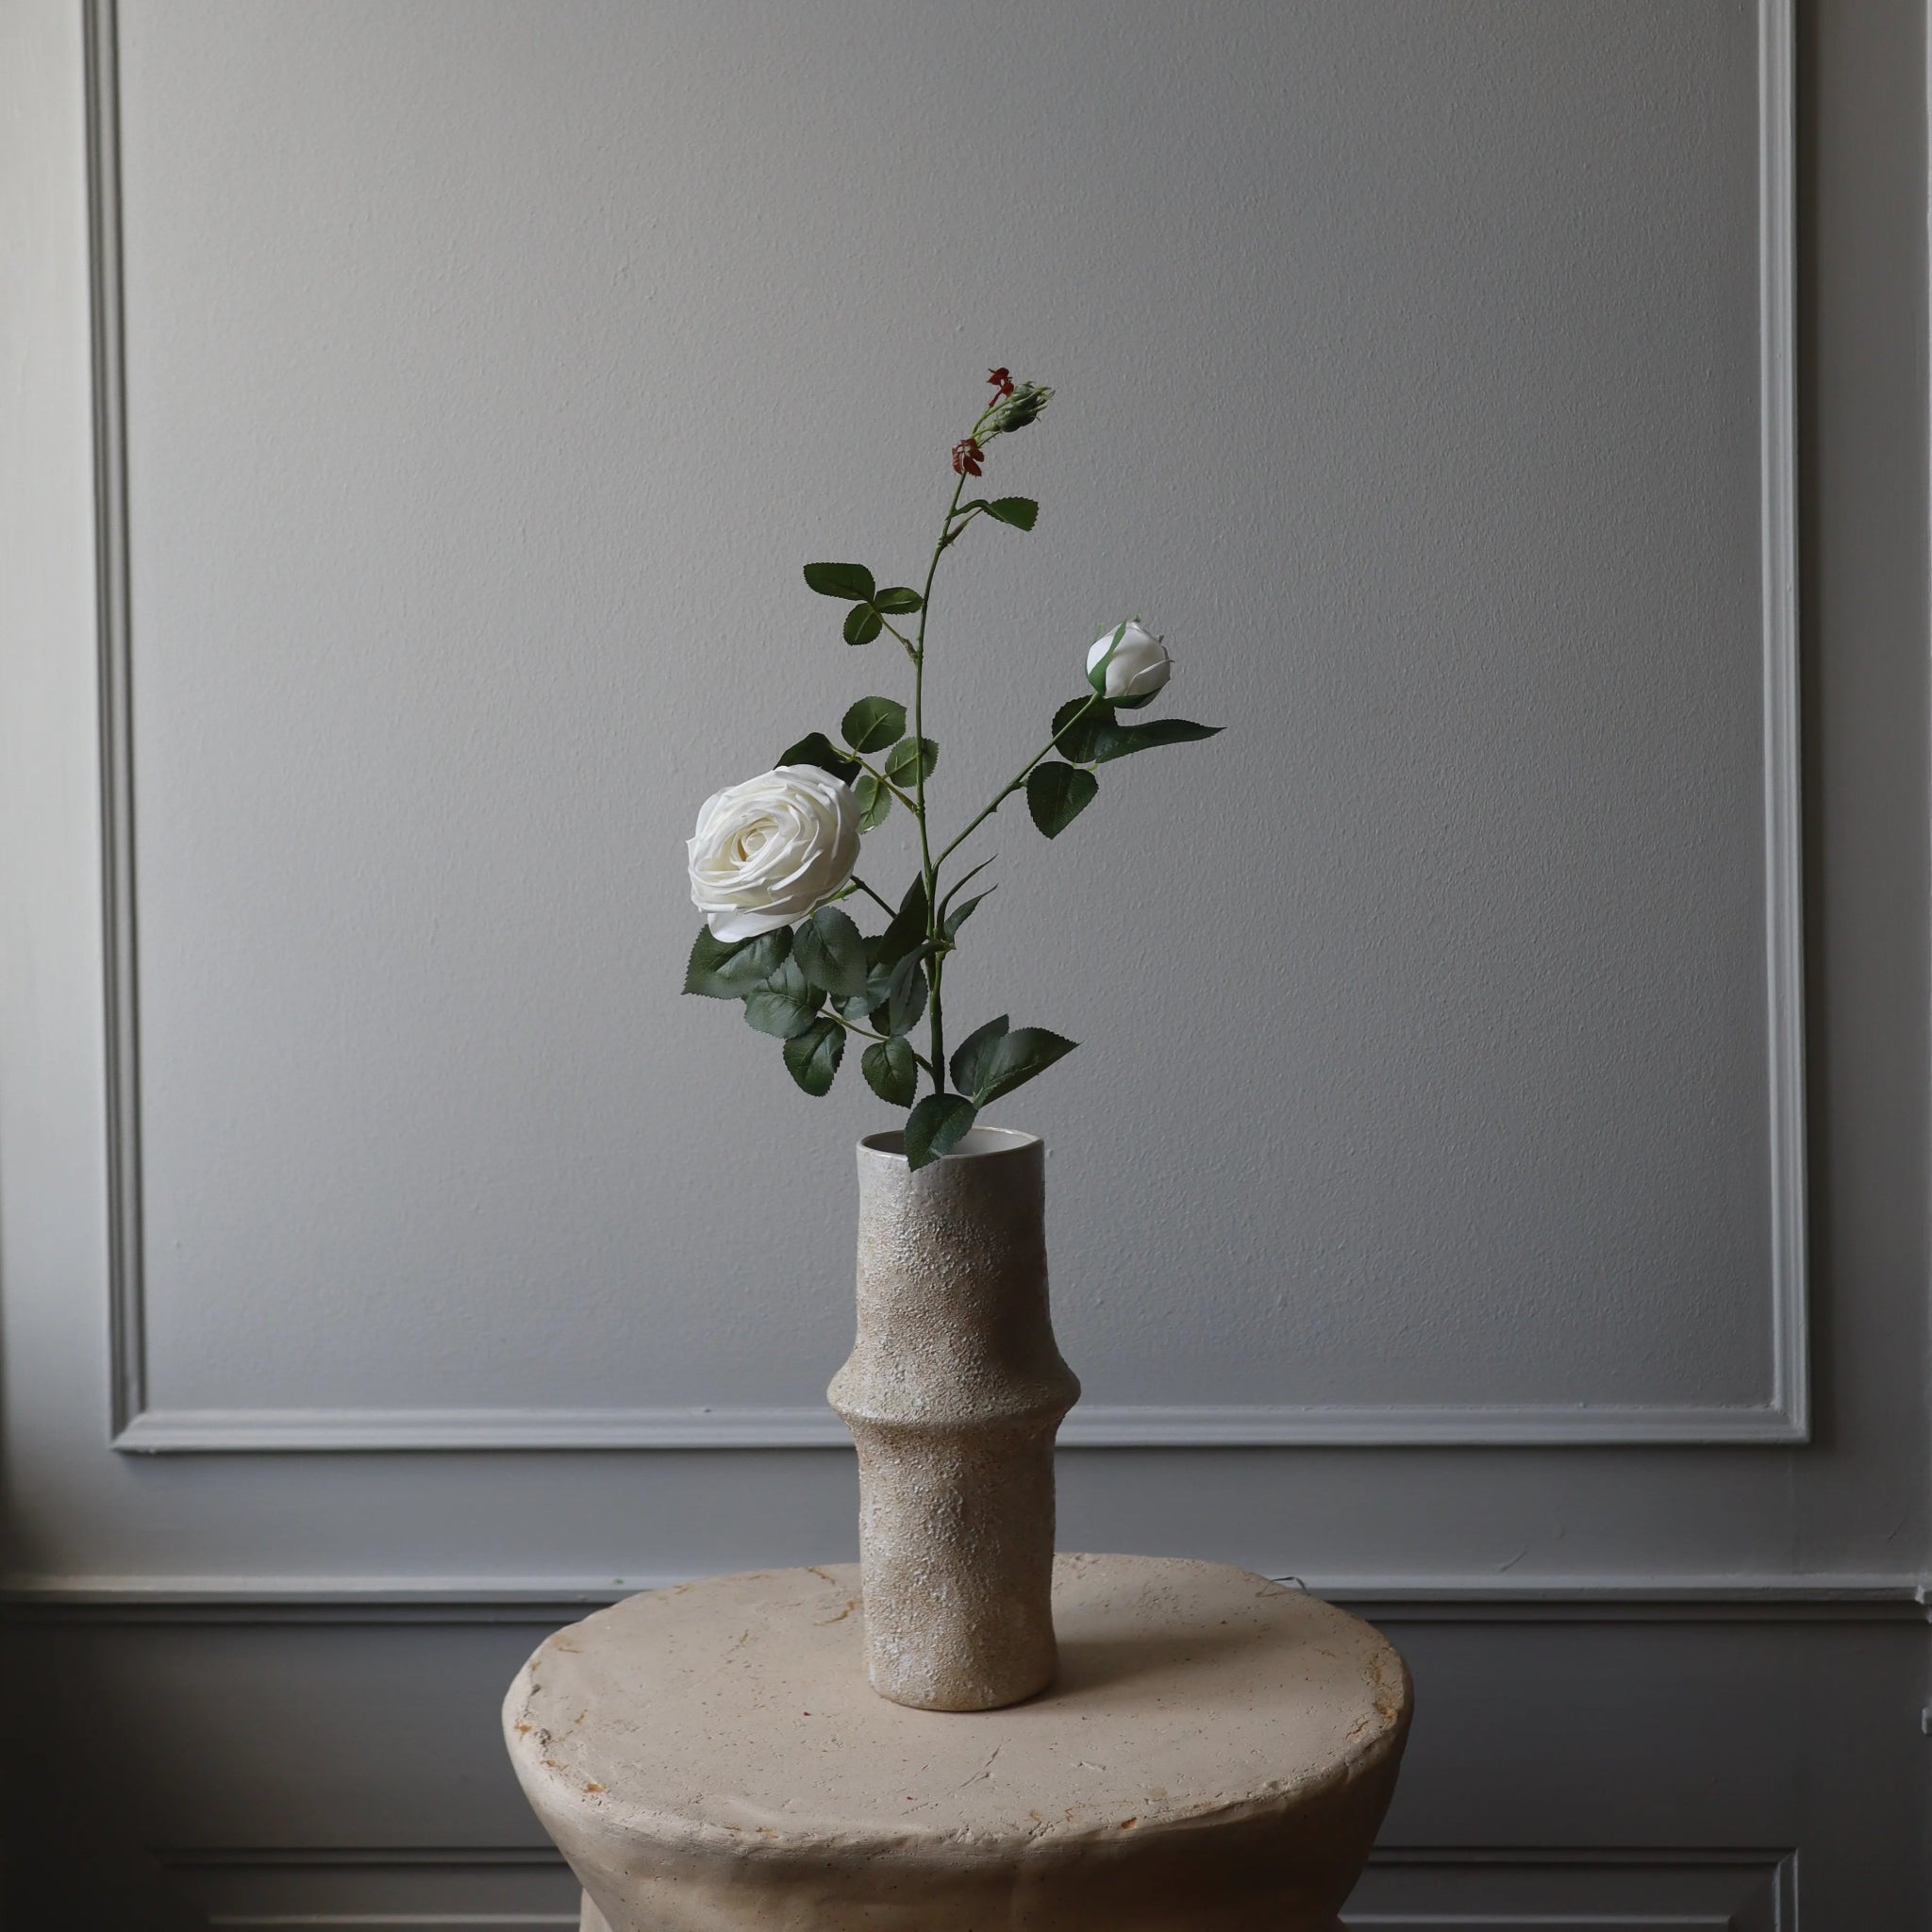 Premium Longstem Spray Roses in White from Botané